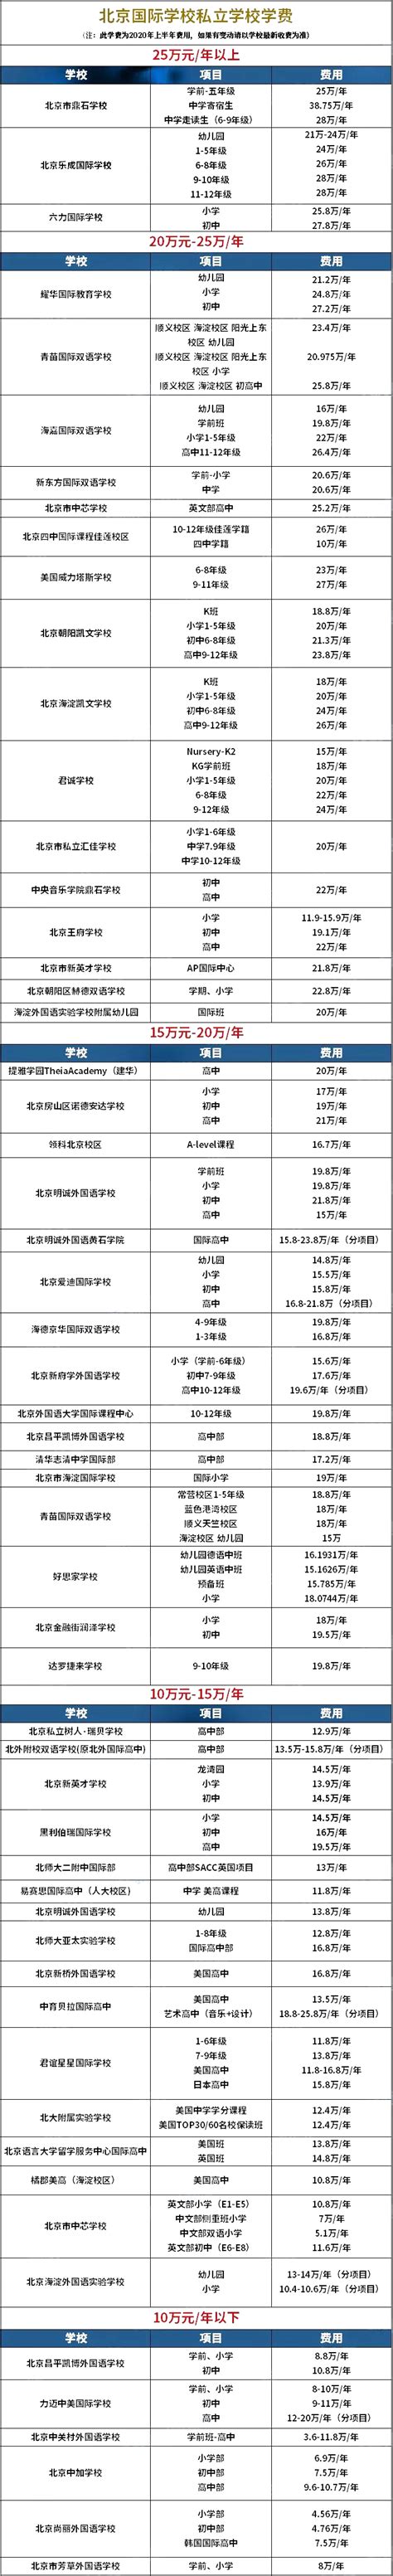 北京国际学校/民办私立学校2020学费盘点一览表-国际学校网